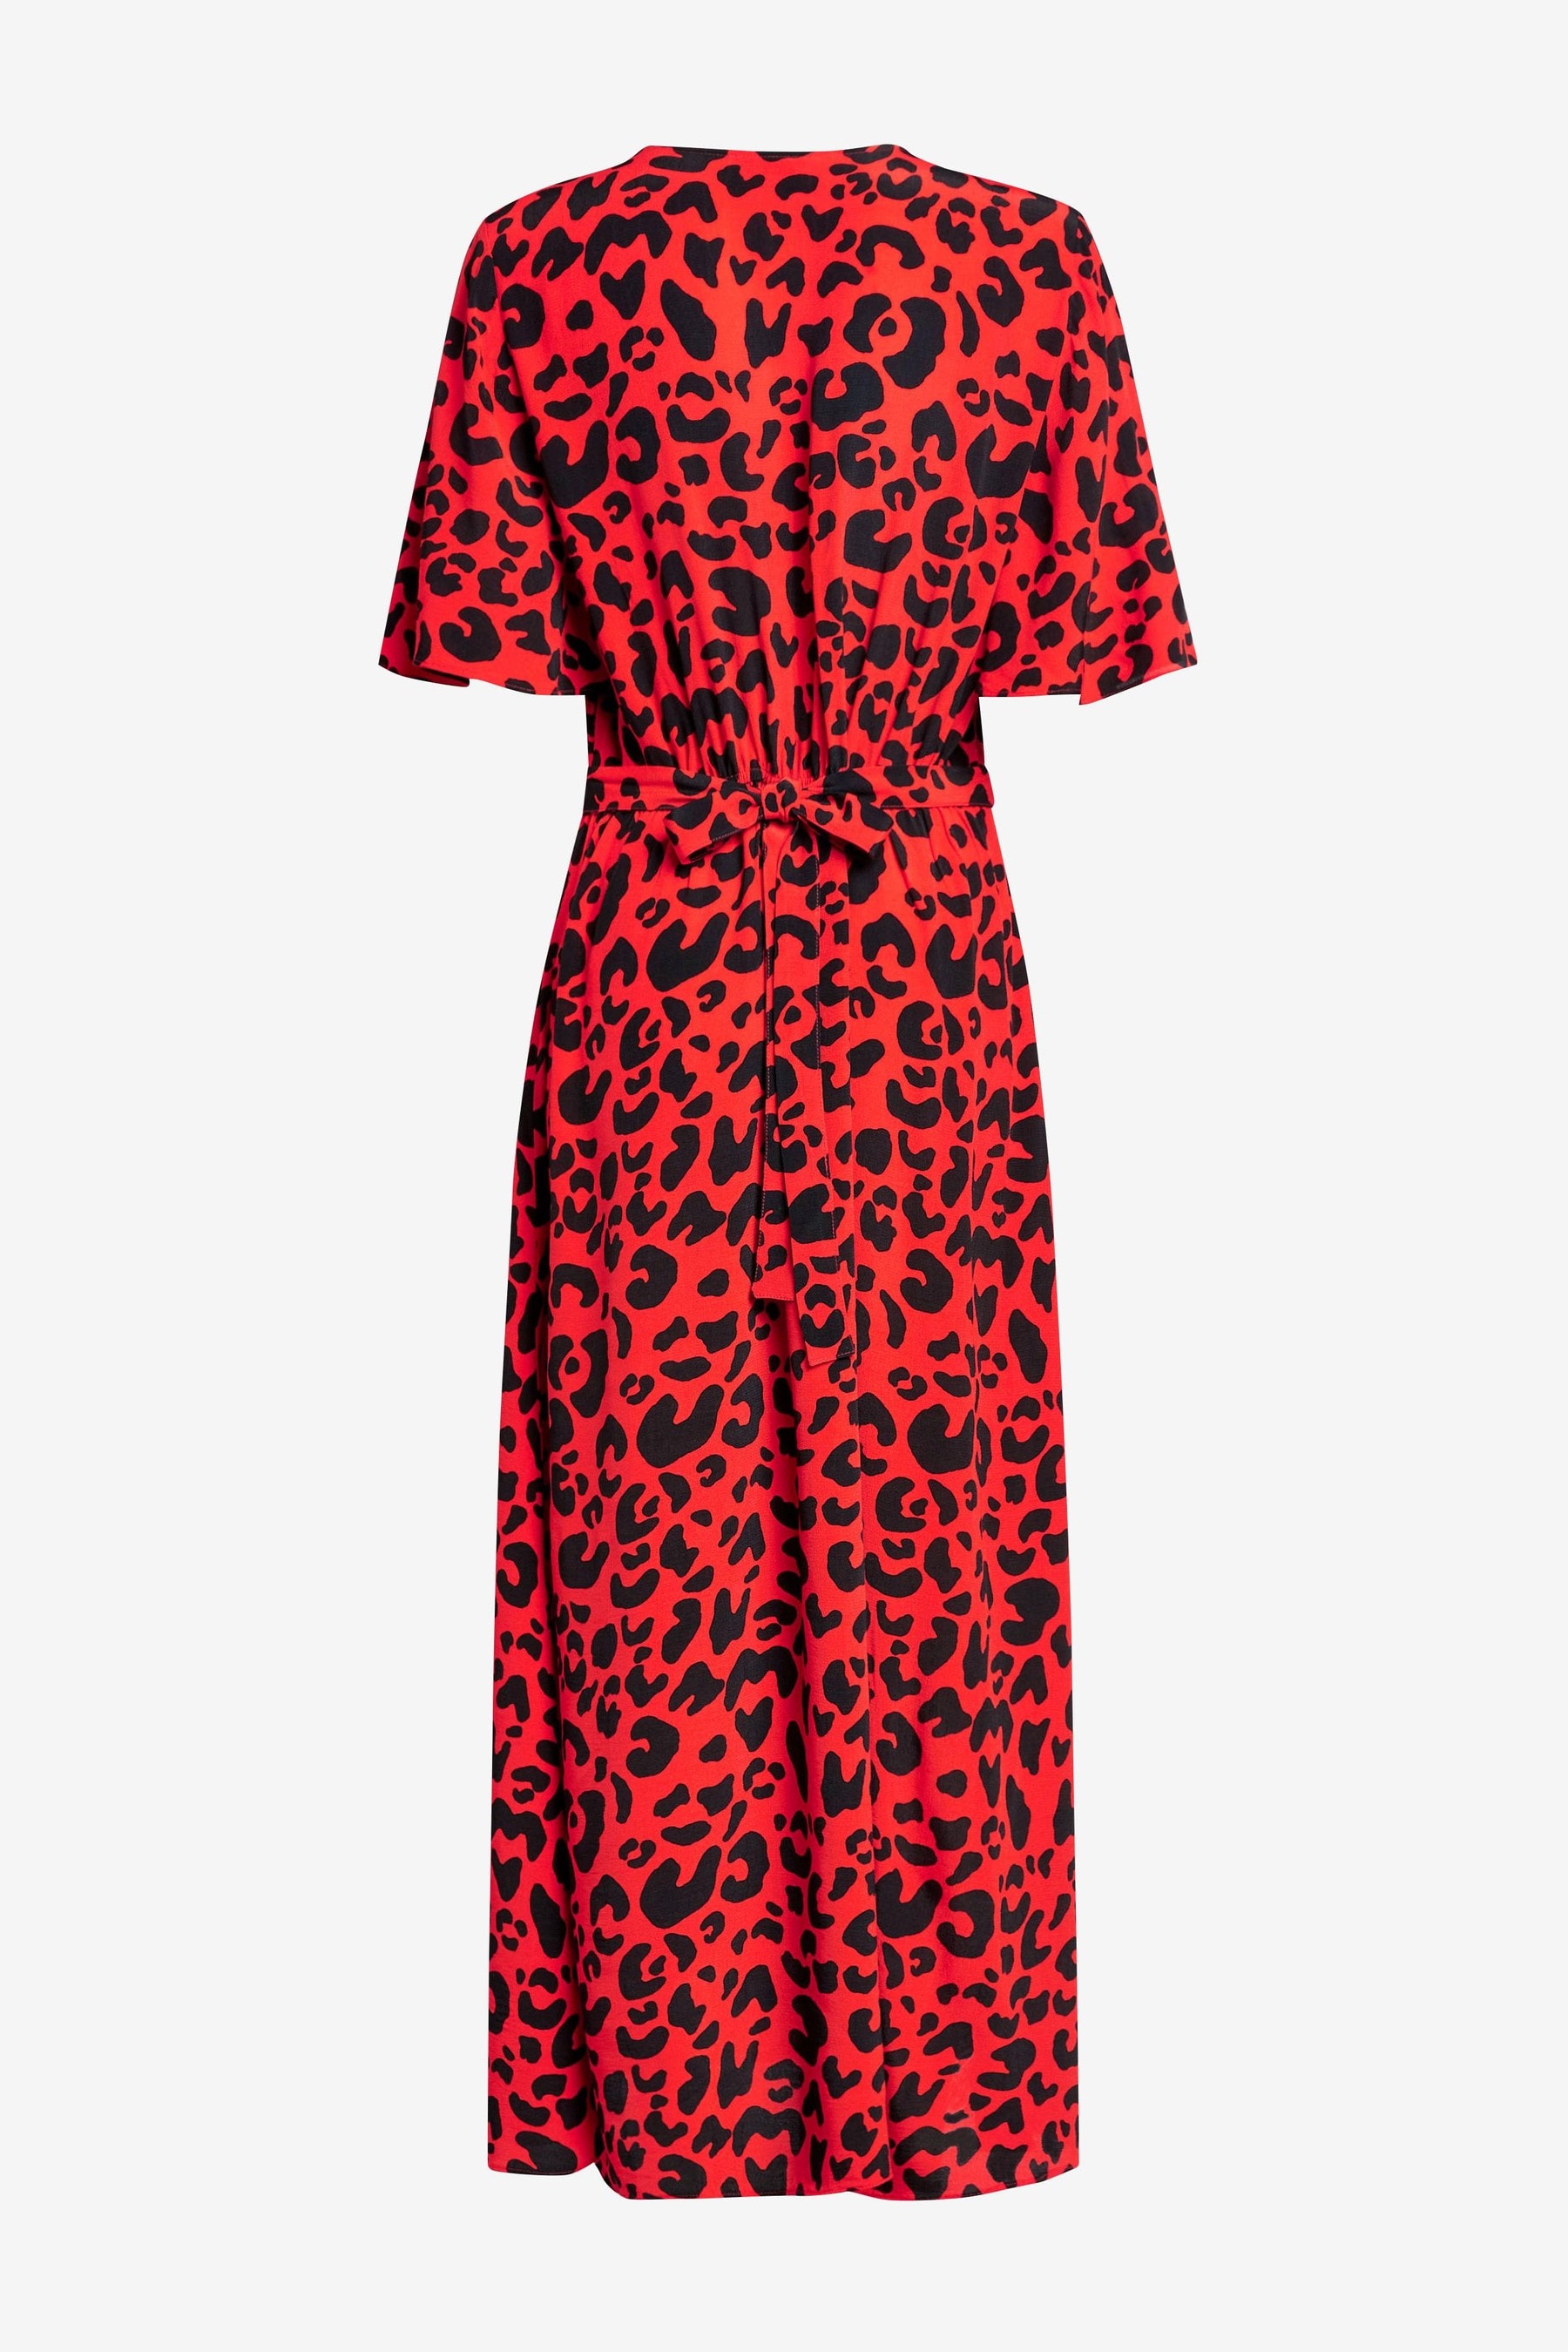 Buy Myleene Klass Wrap Dress from the Next UK online shop